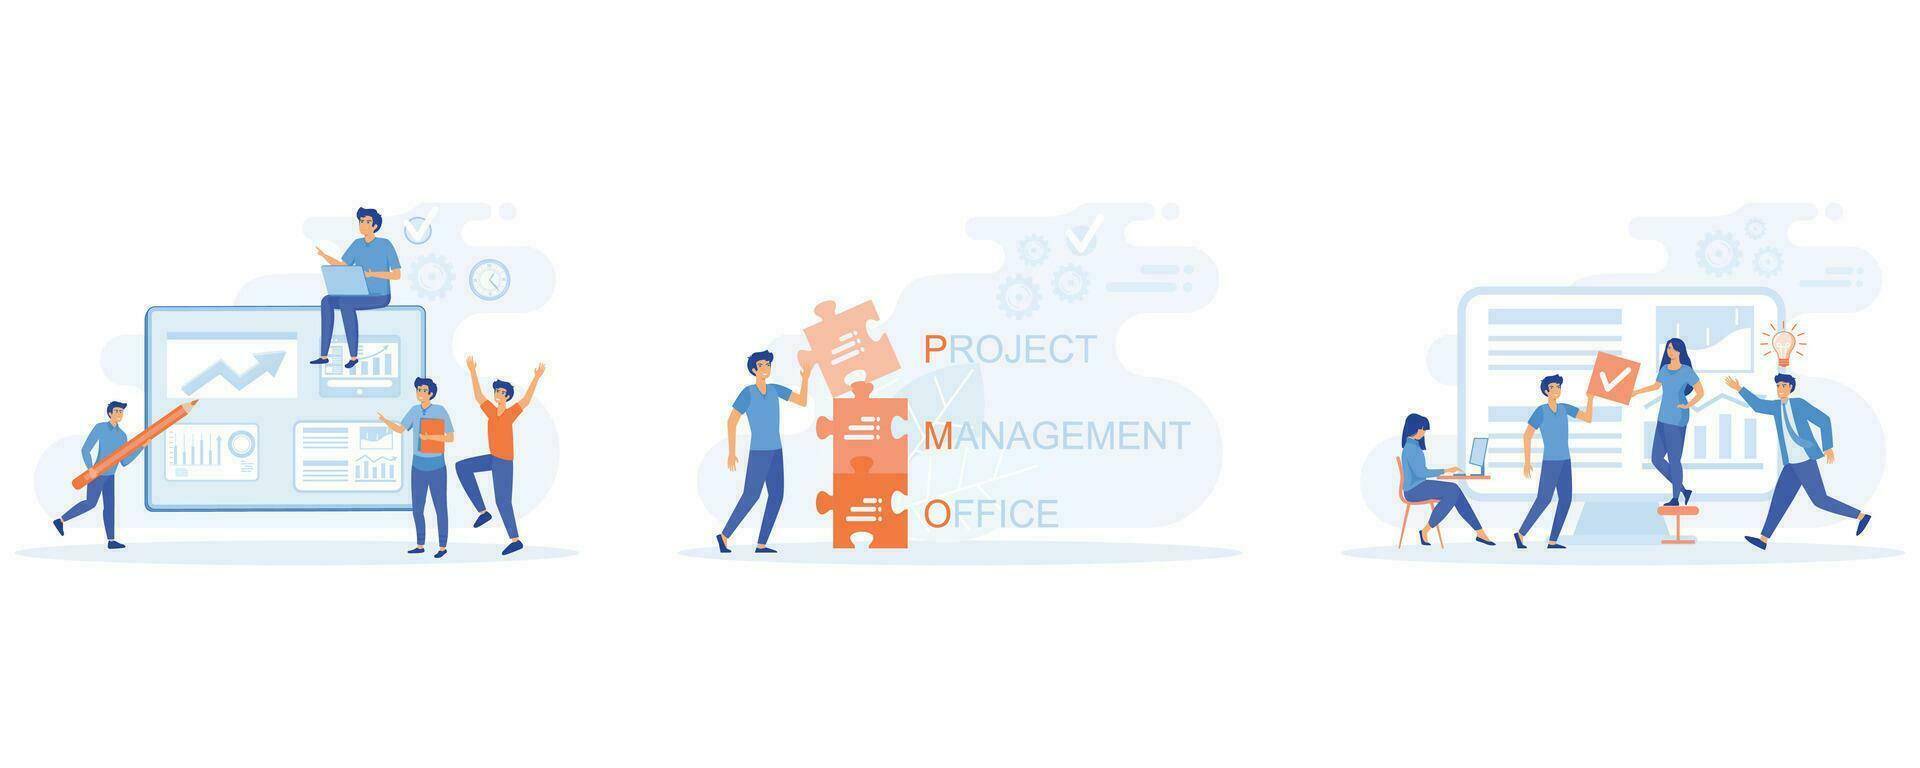 flusso di lavoro organizzazione. progetto gestione ufficio acronimo, agile visivo progetto gestione, impostato piatto vettore moderno illustrazione